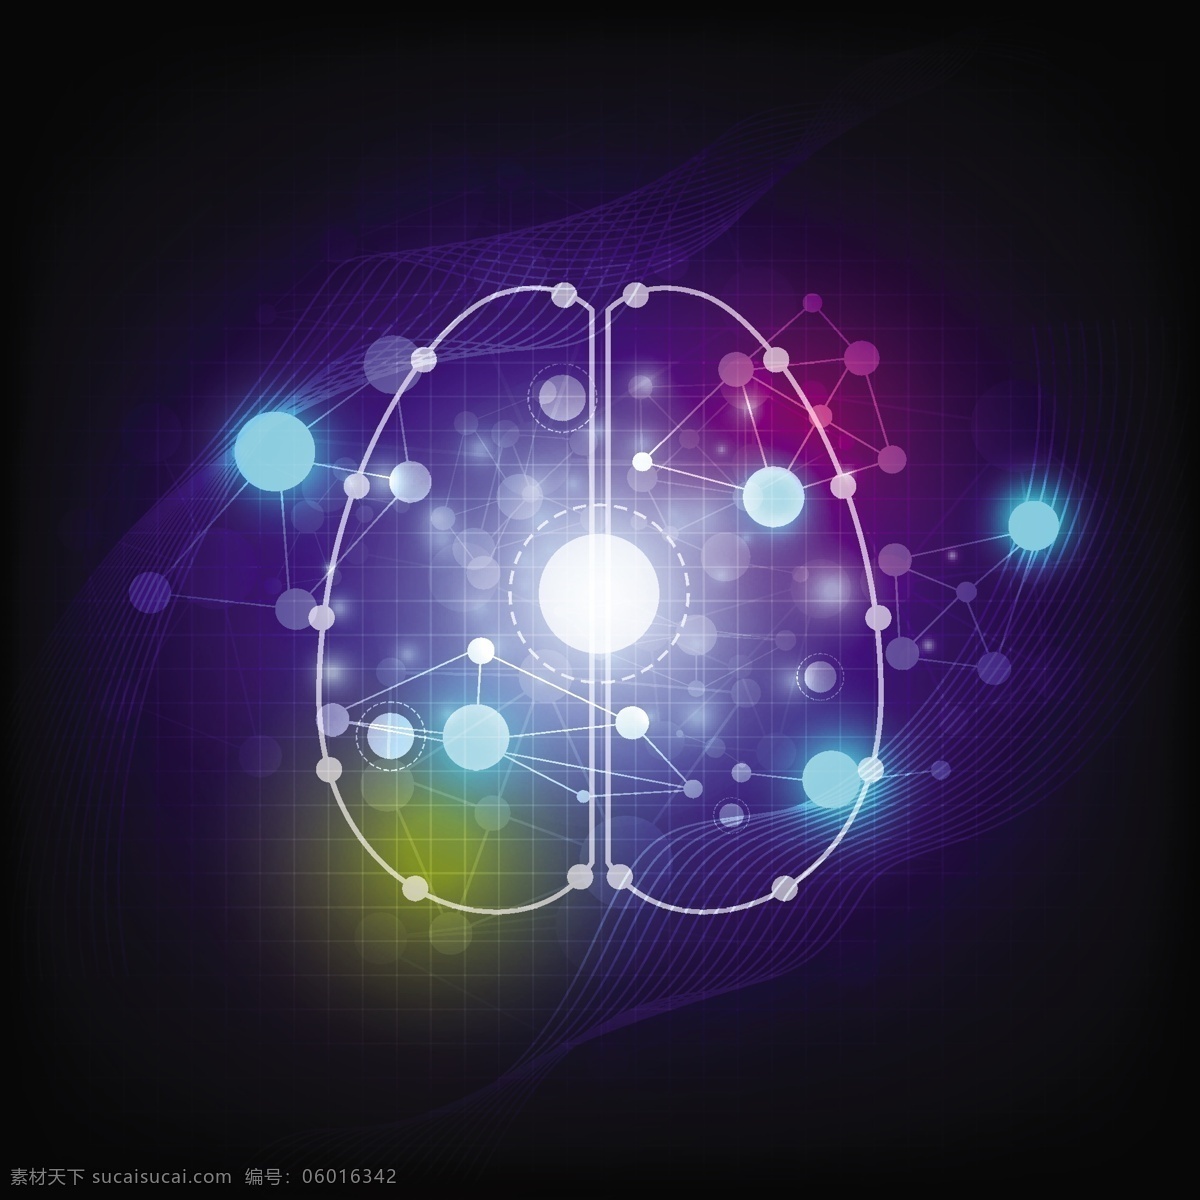 大脑 彩色 光亮 背景 科技背景 生活百科 矢量素材 黑色